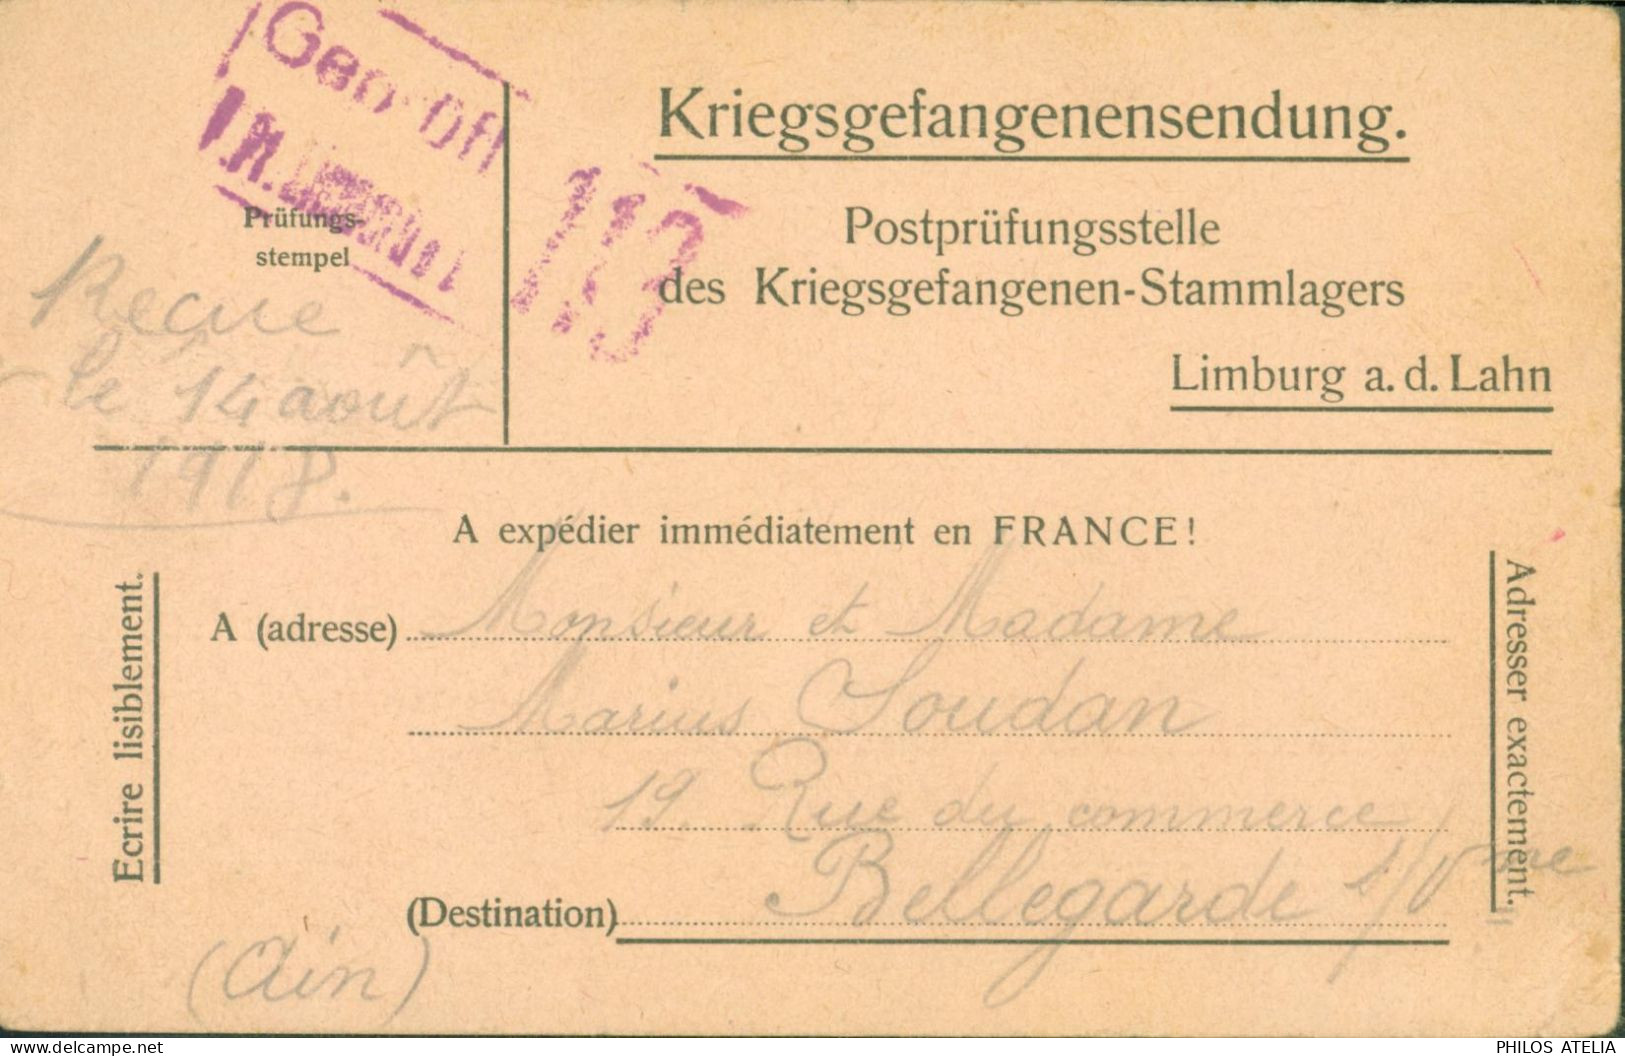 Guerre 14 Avis De Capture D'un Prisonnier De Guerre Français à Limburg A.d. Lahn Censure Camp 29 6 18 FM Franchise - Guerra De 1914-18